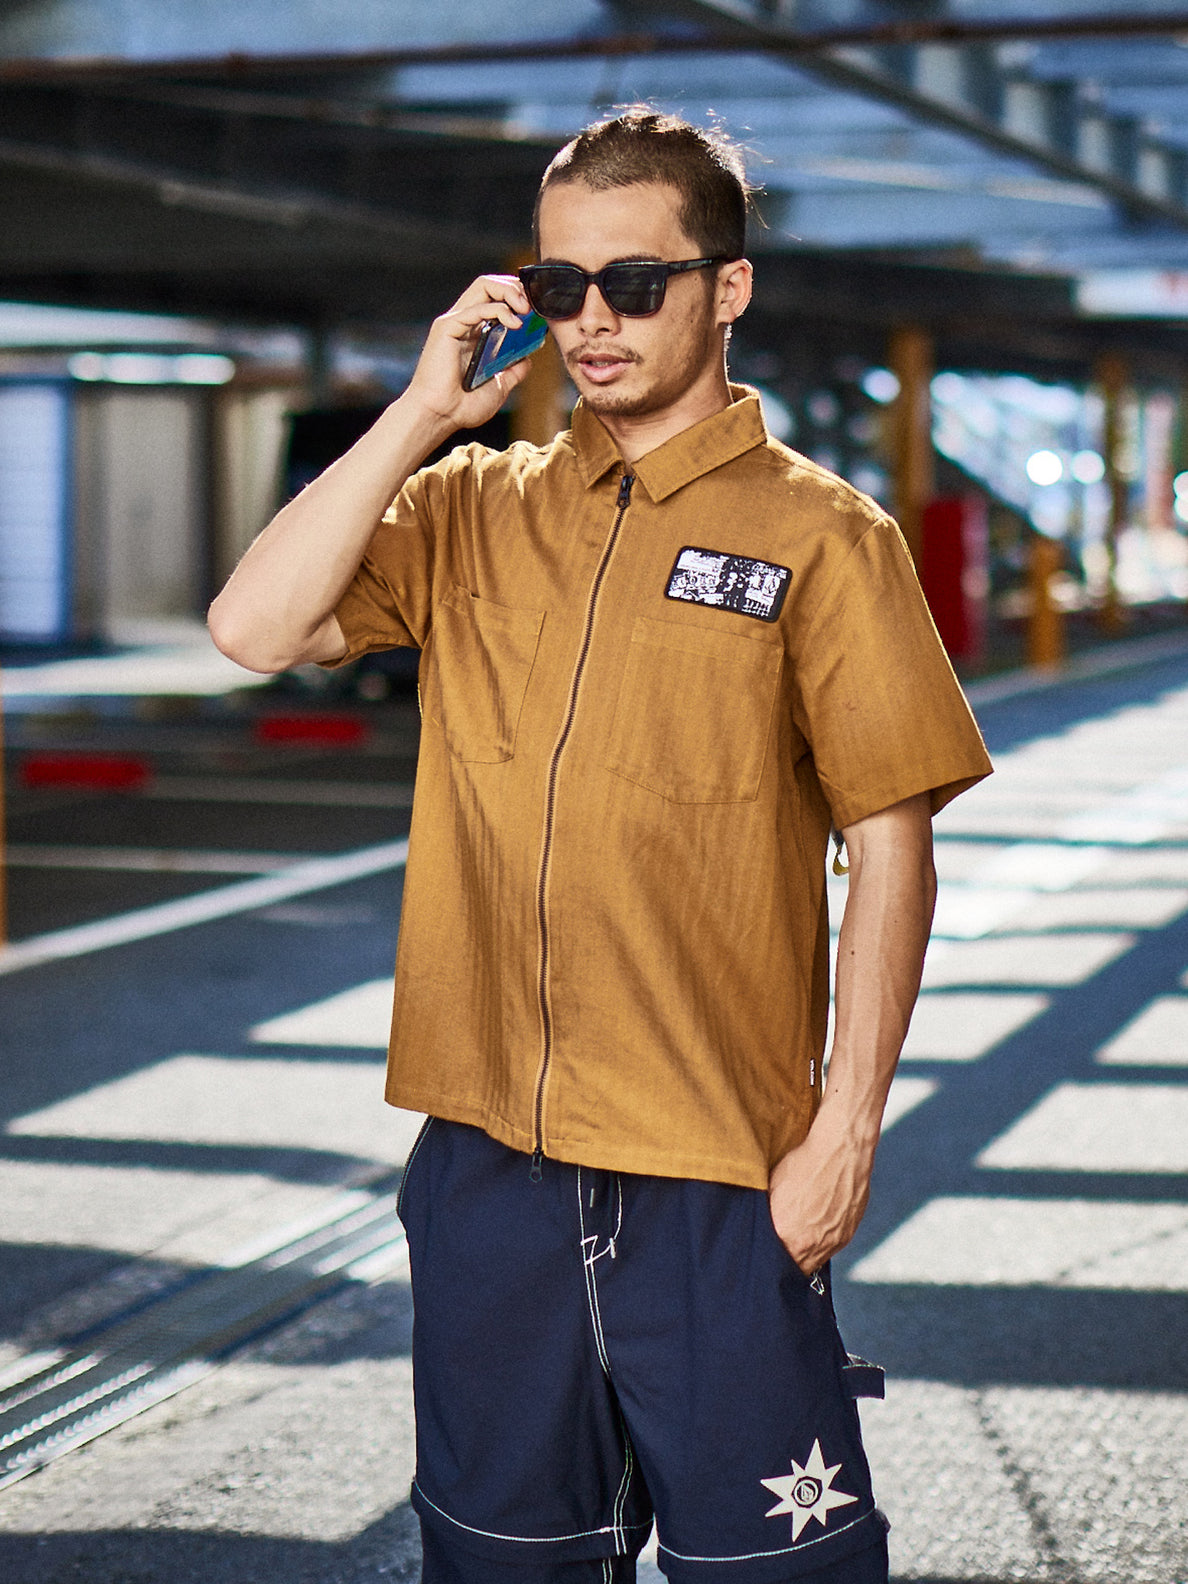 Tokyo True Woven Short Sleeve Shirt - Rubber